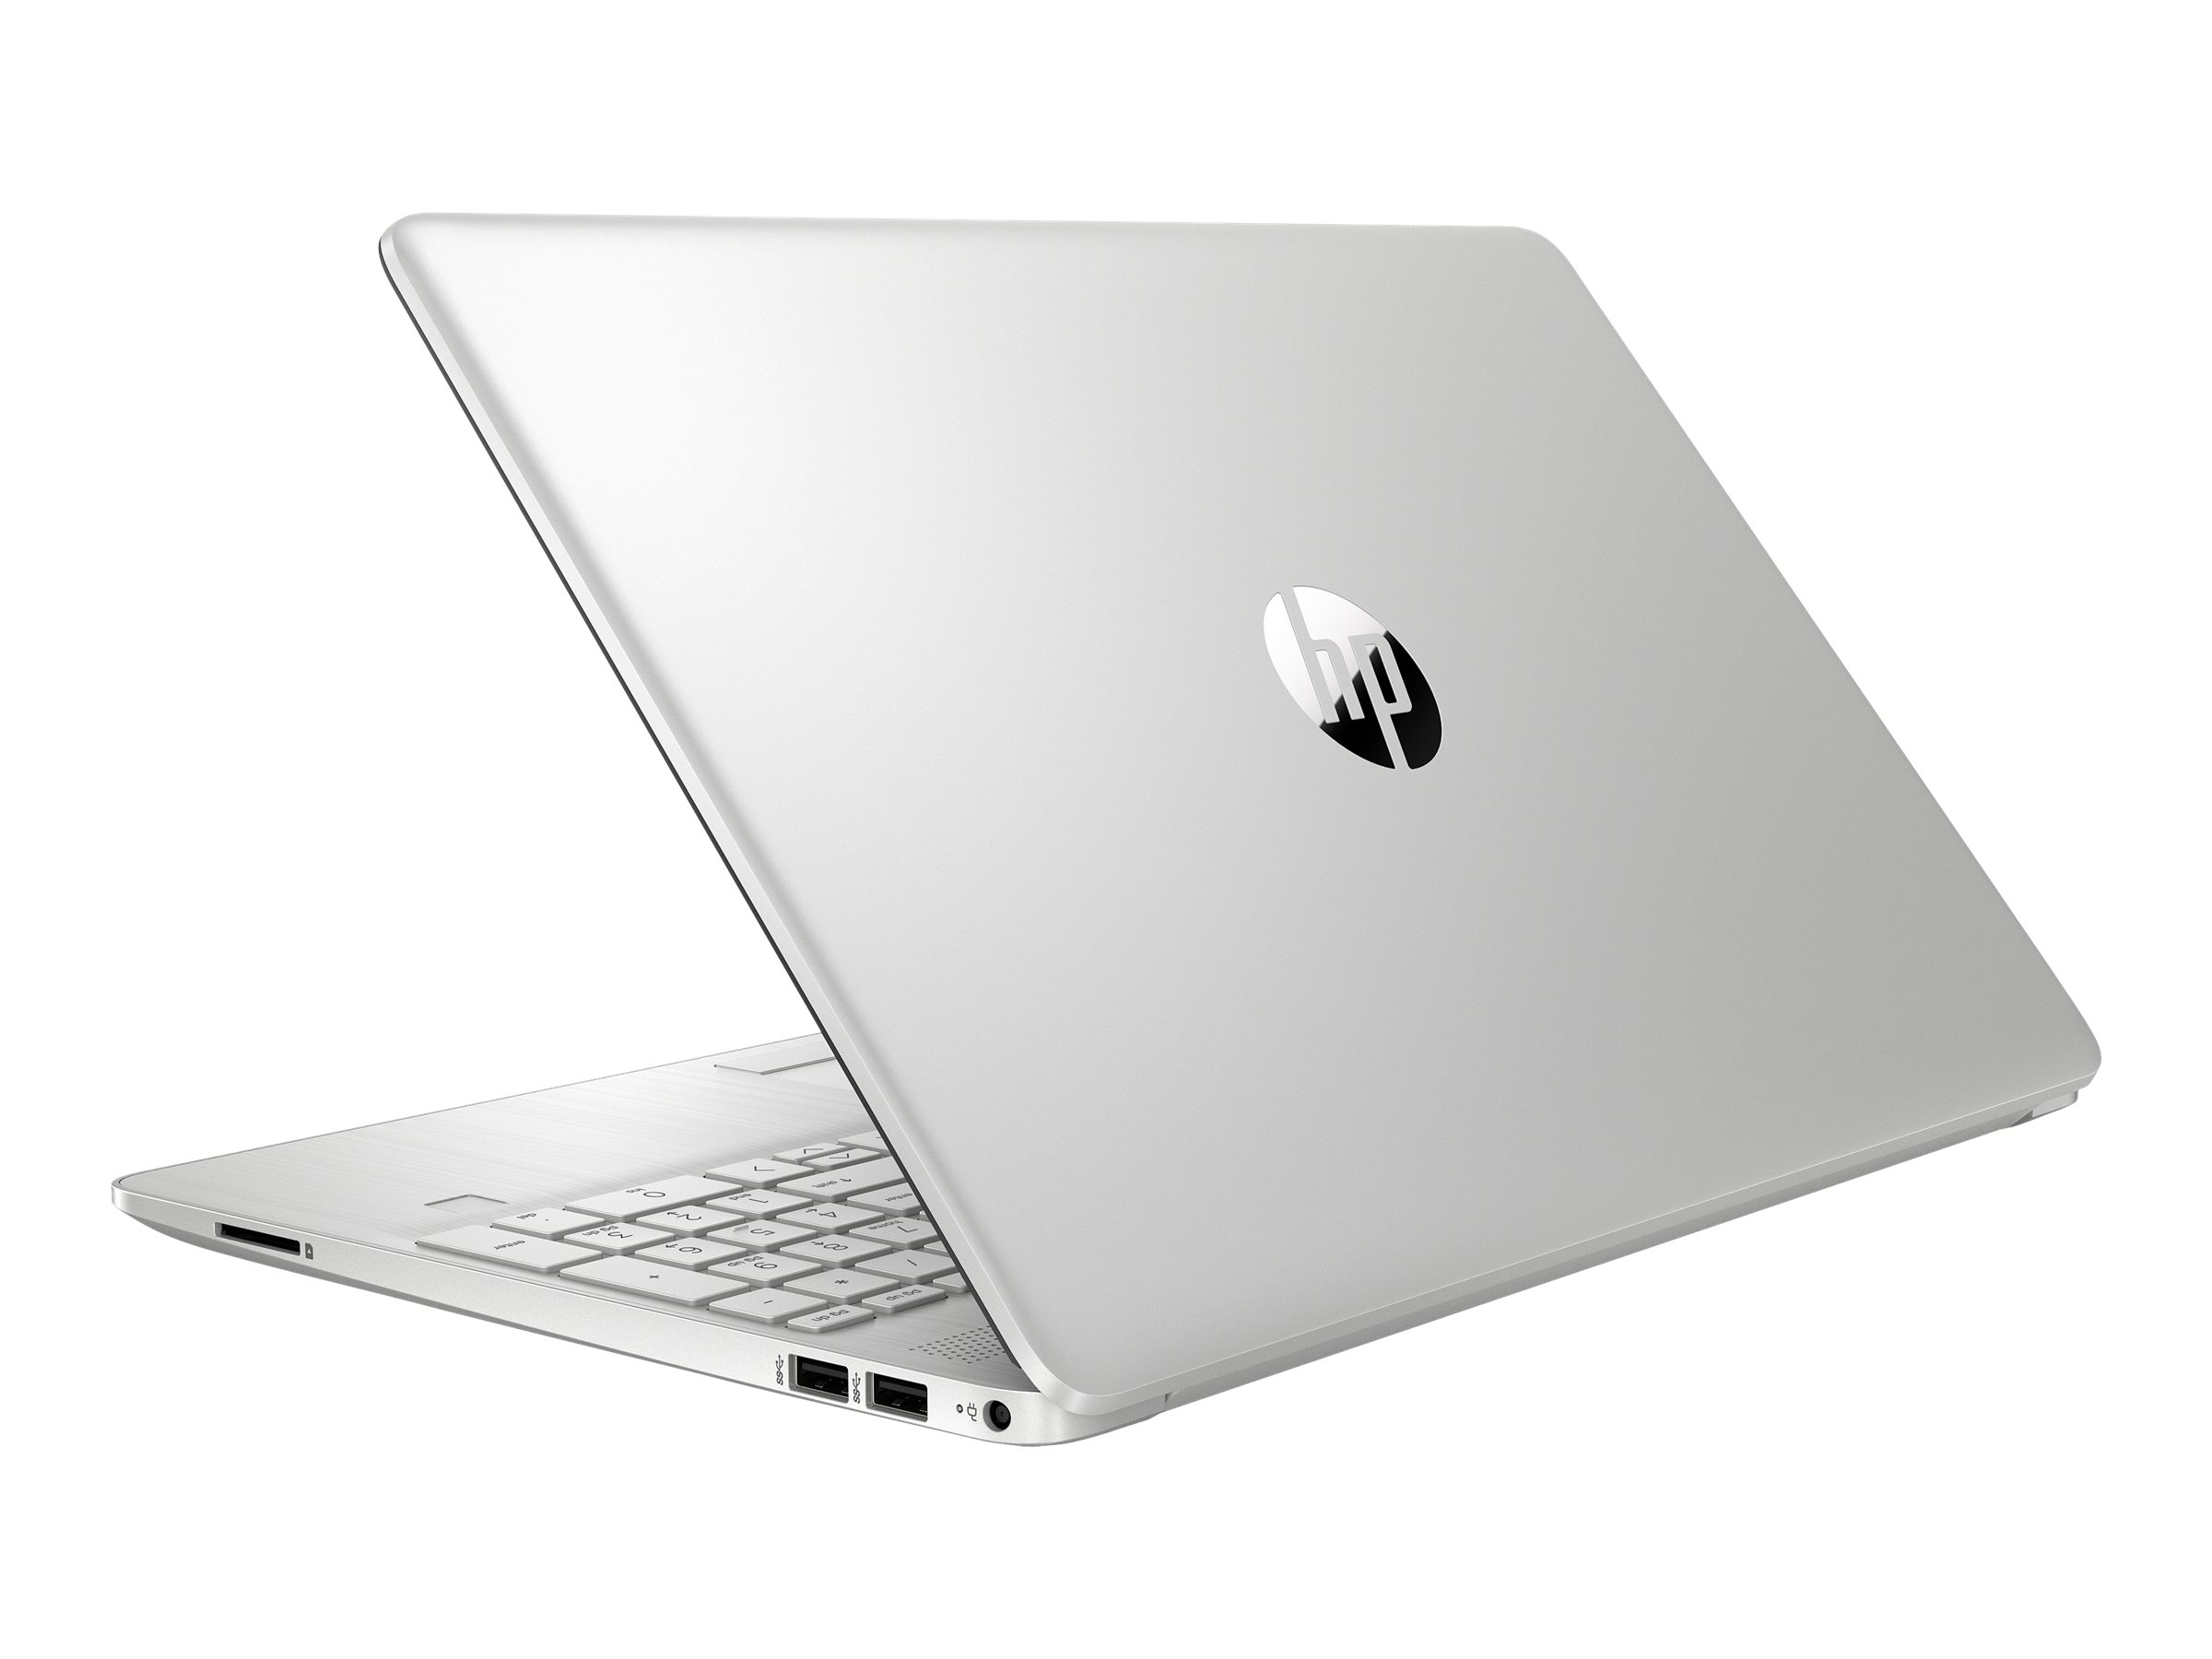 HP Laptop 15-dw2036nf - Intel Core i3 - 1005G1 / jusqu'à 3.4 GHz - Win 10 Familiale 64 bits - UHD Graphics - 4 Go RAM - 128 Go SSD + 1 To HDD - 15.6" 1920 x 1080 (Full HD) - Wi-Fi 5 - argent naturel, motif brossé vertical, finition peinte (couvercle et base), cadre du clavier en finition moulée - clavier : Français - avec HP 2 years Pickup and Return Bundled Warranty Extension for Low End Notebooks - 1X2M9EA#ABF - Ordinateurs portables